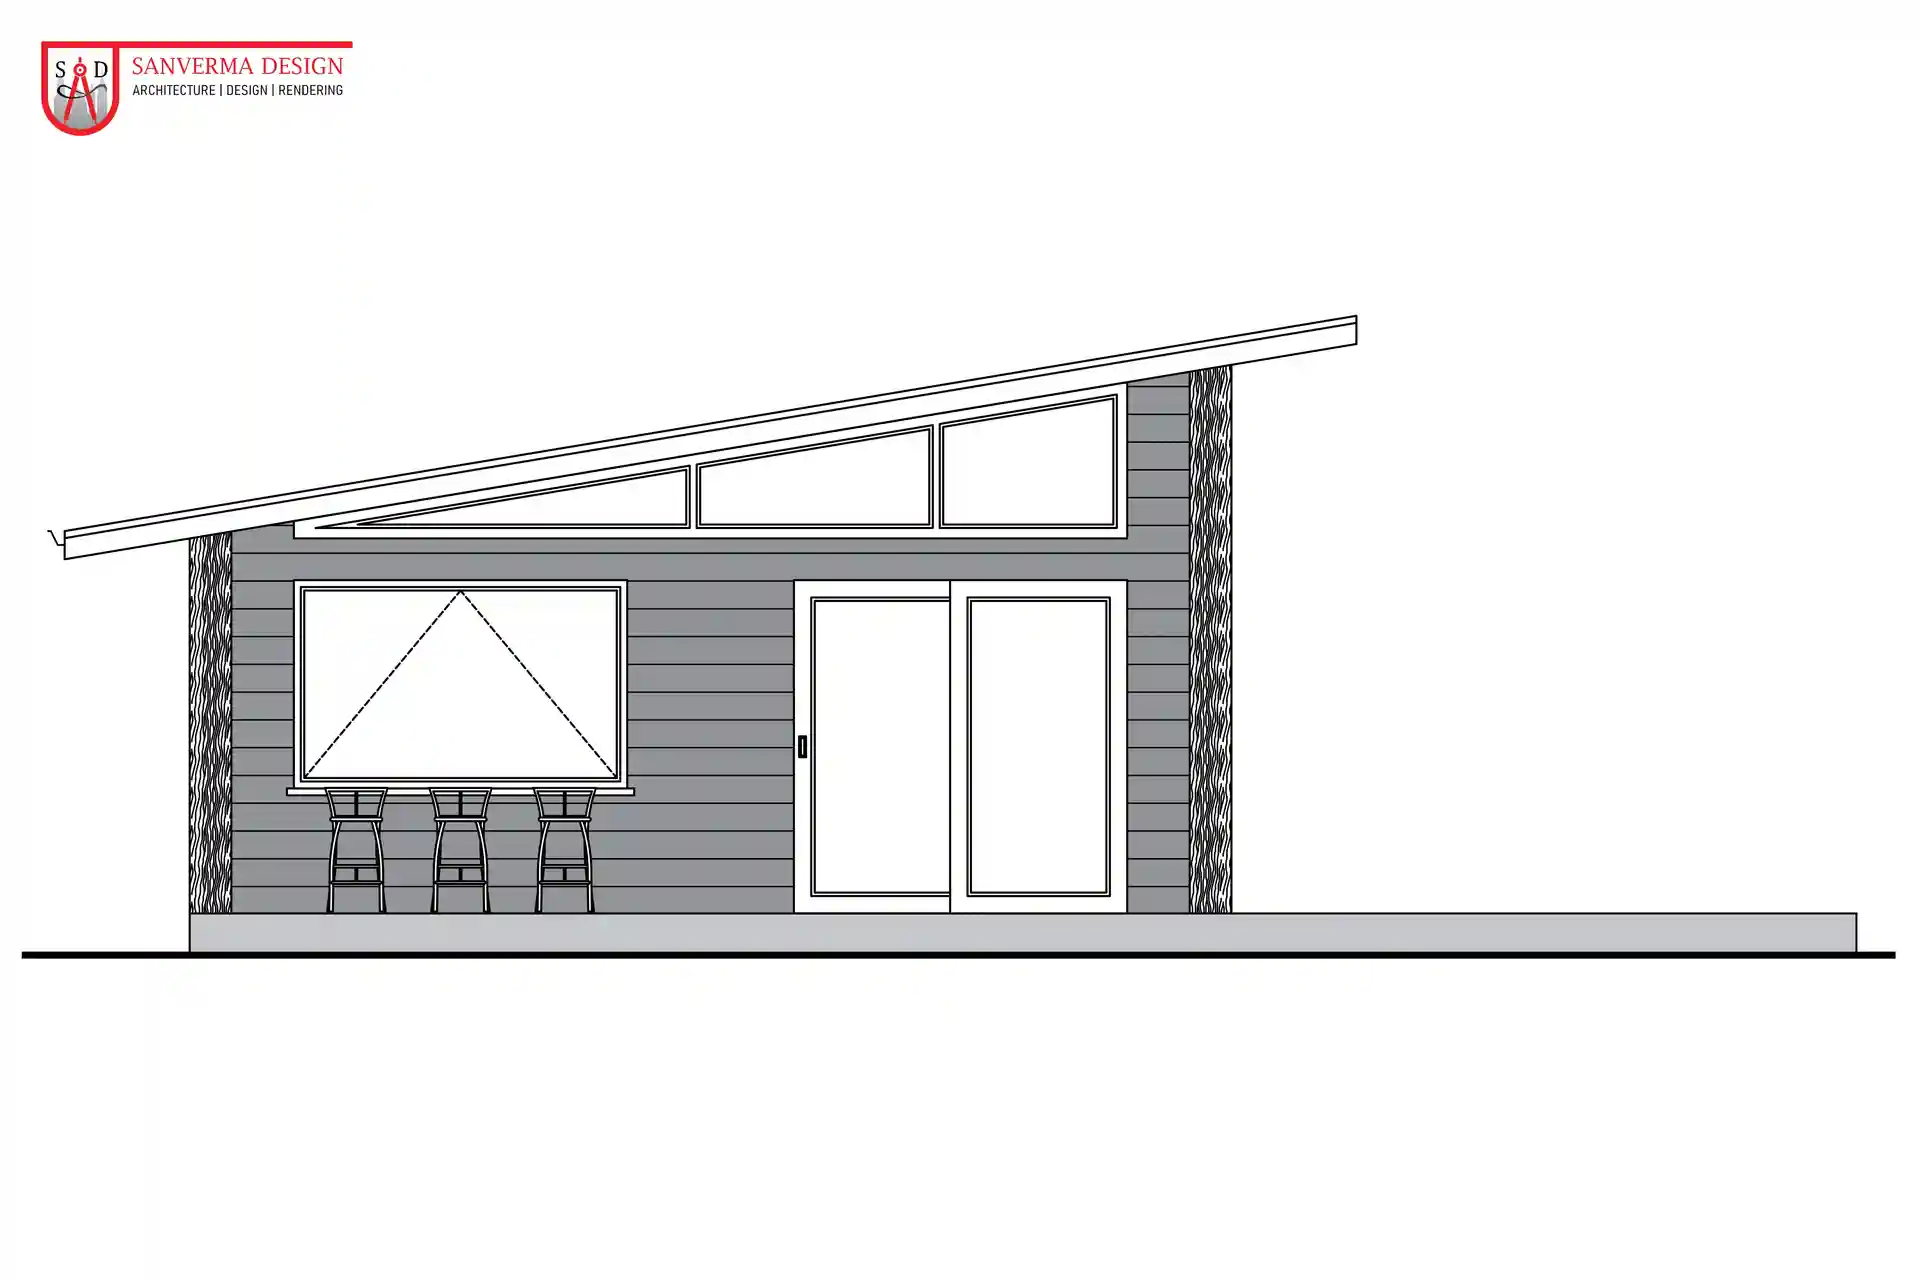 2 Bedroom Skillion Roof House Floor Plan